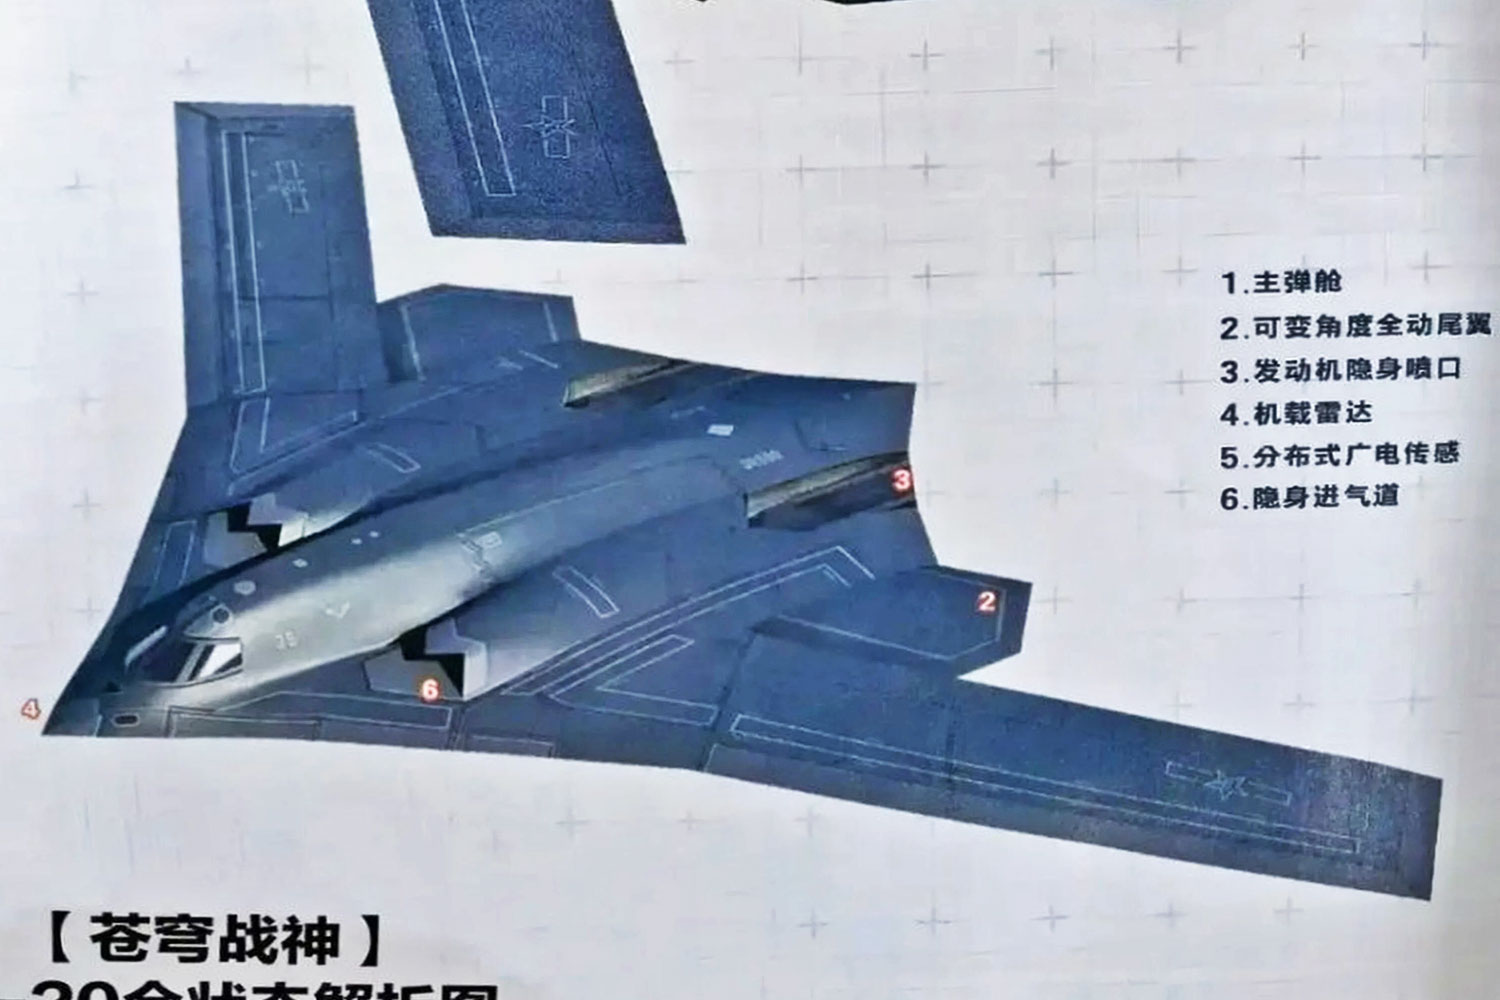 Ilustração do H-20 que foi publicada por revista do governo lembra o modelo flagrado